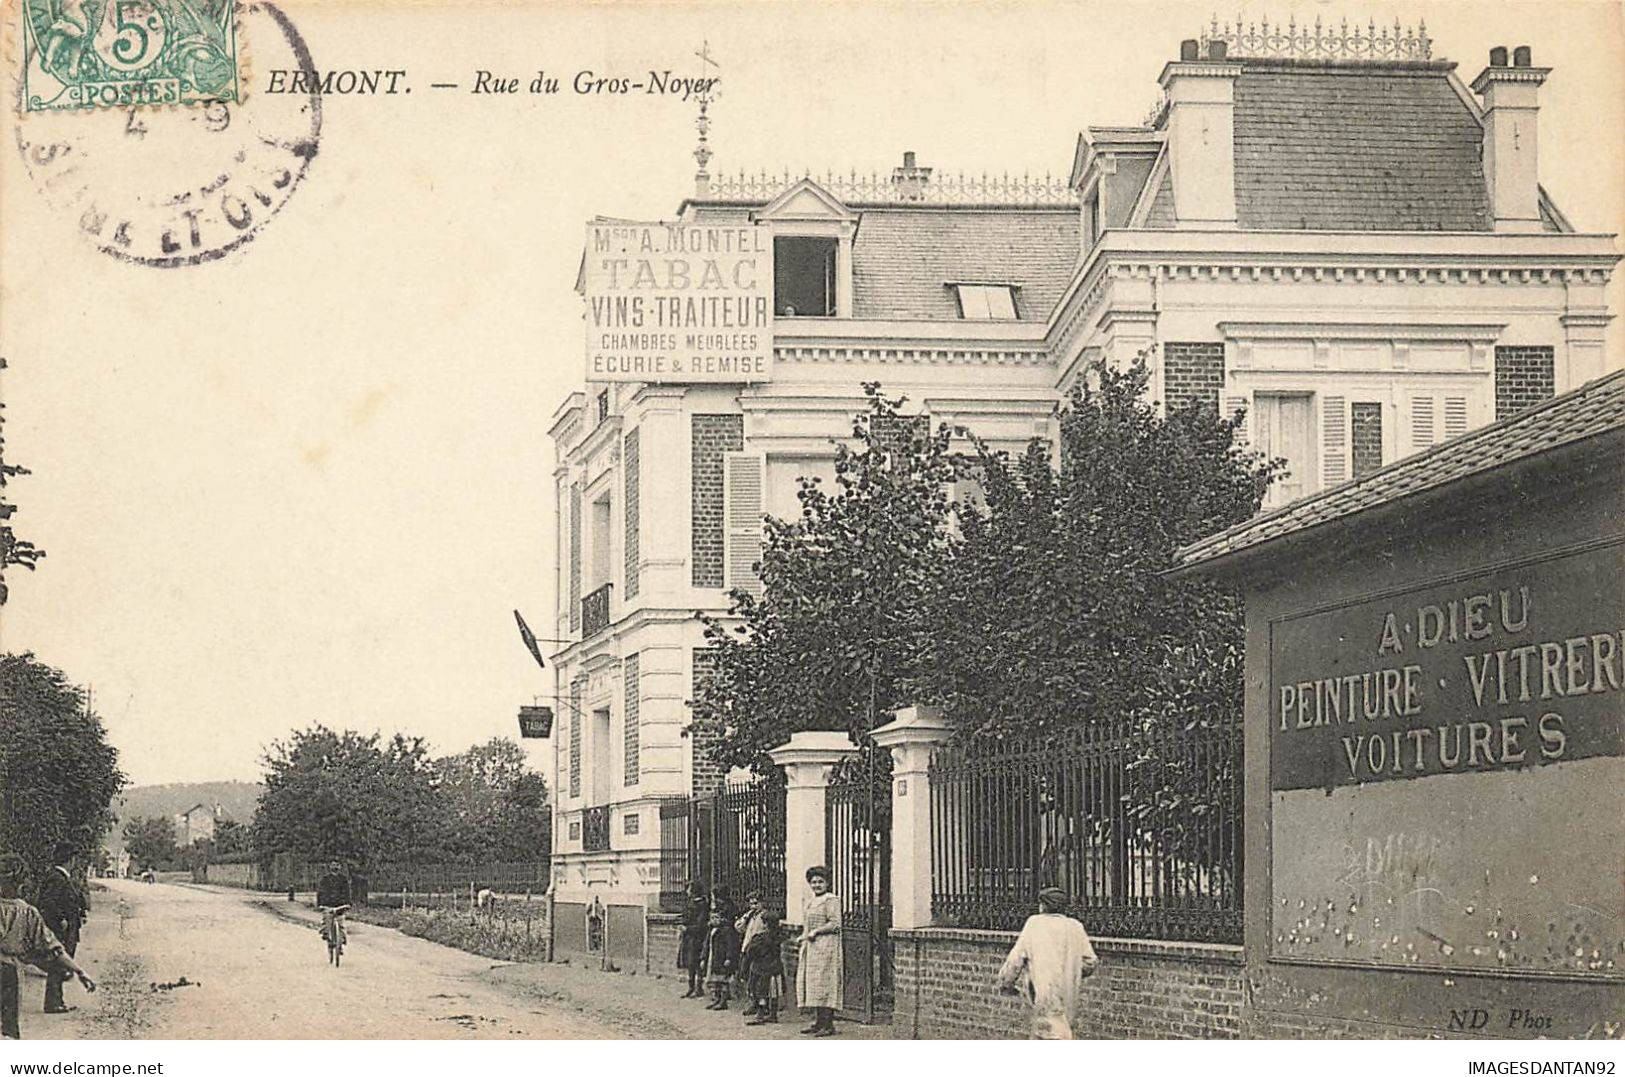 95 ERMONT #AS29862 RUE DU GROS NOYER HOTEL MONTEL TABAC VINS - Ermont-Eaubonne